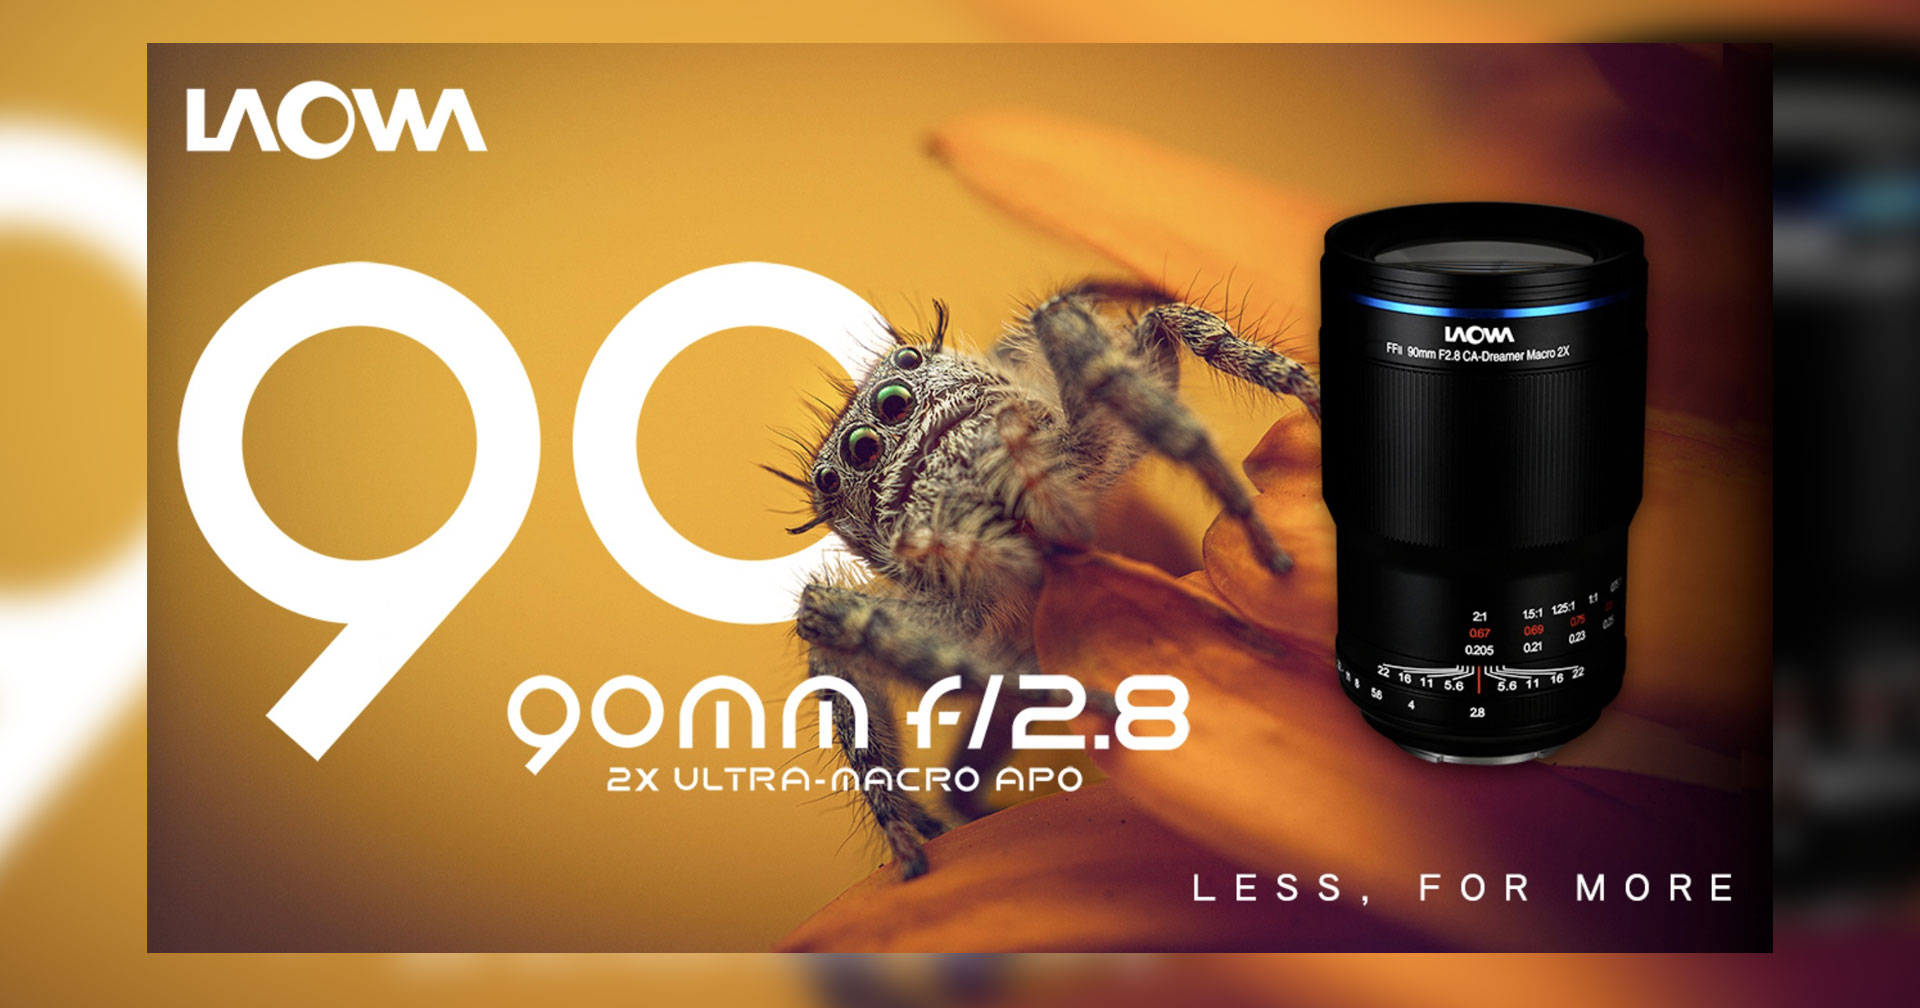 เปิดตัว Laowa 90mm F2.8 Ultra Macro APO เลนส์มาโคร 2x สำหรับกล้องฟูลเฟรมมิเรอร์เลส